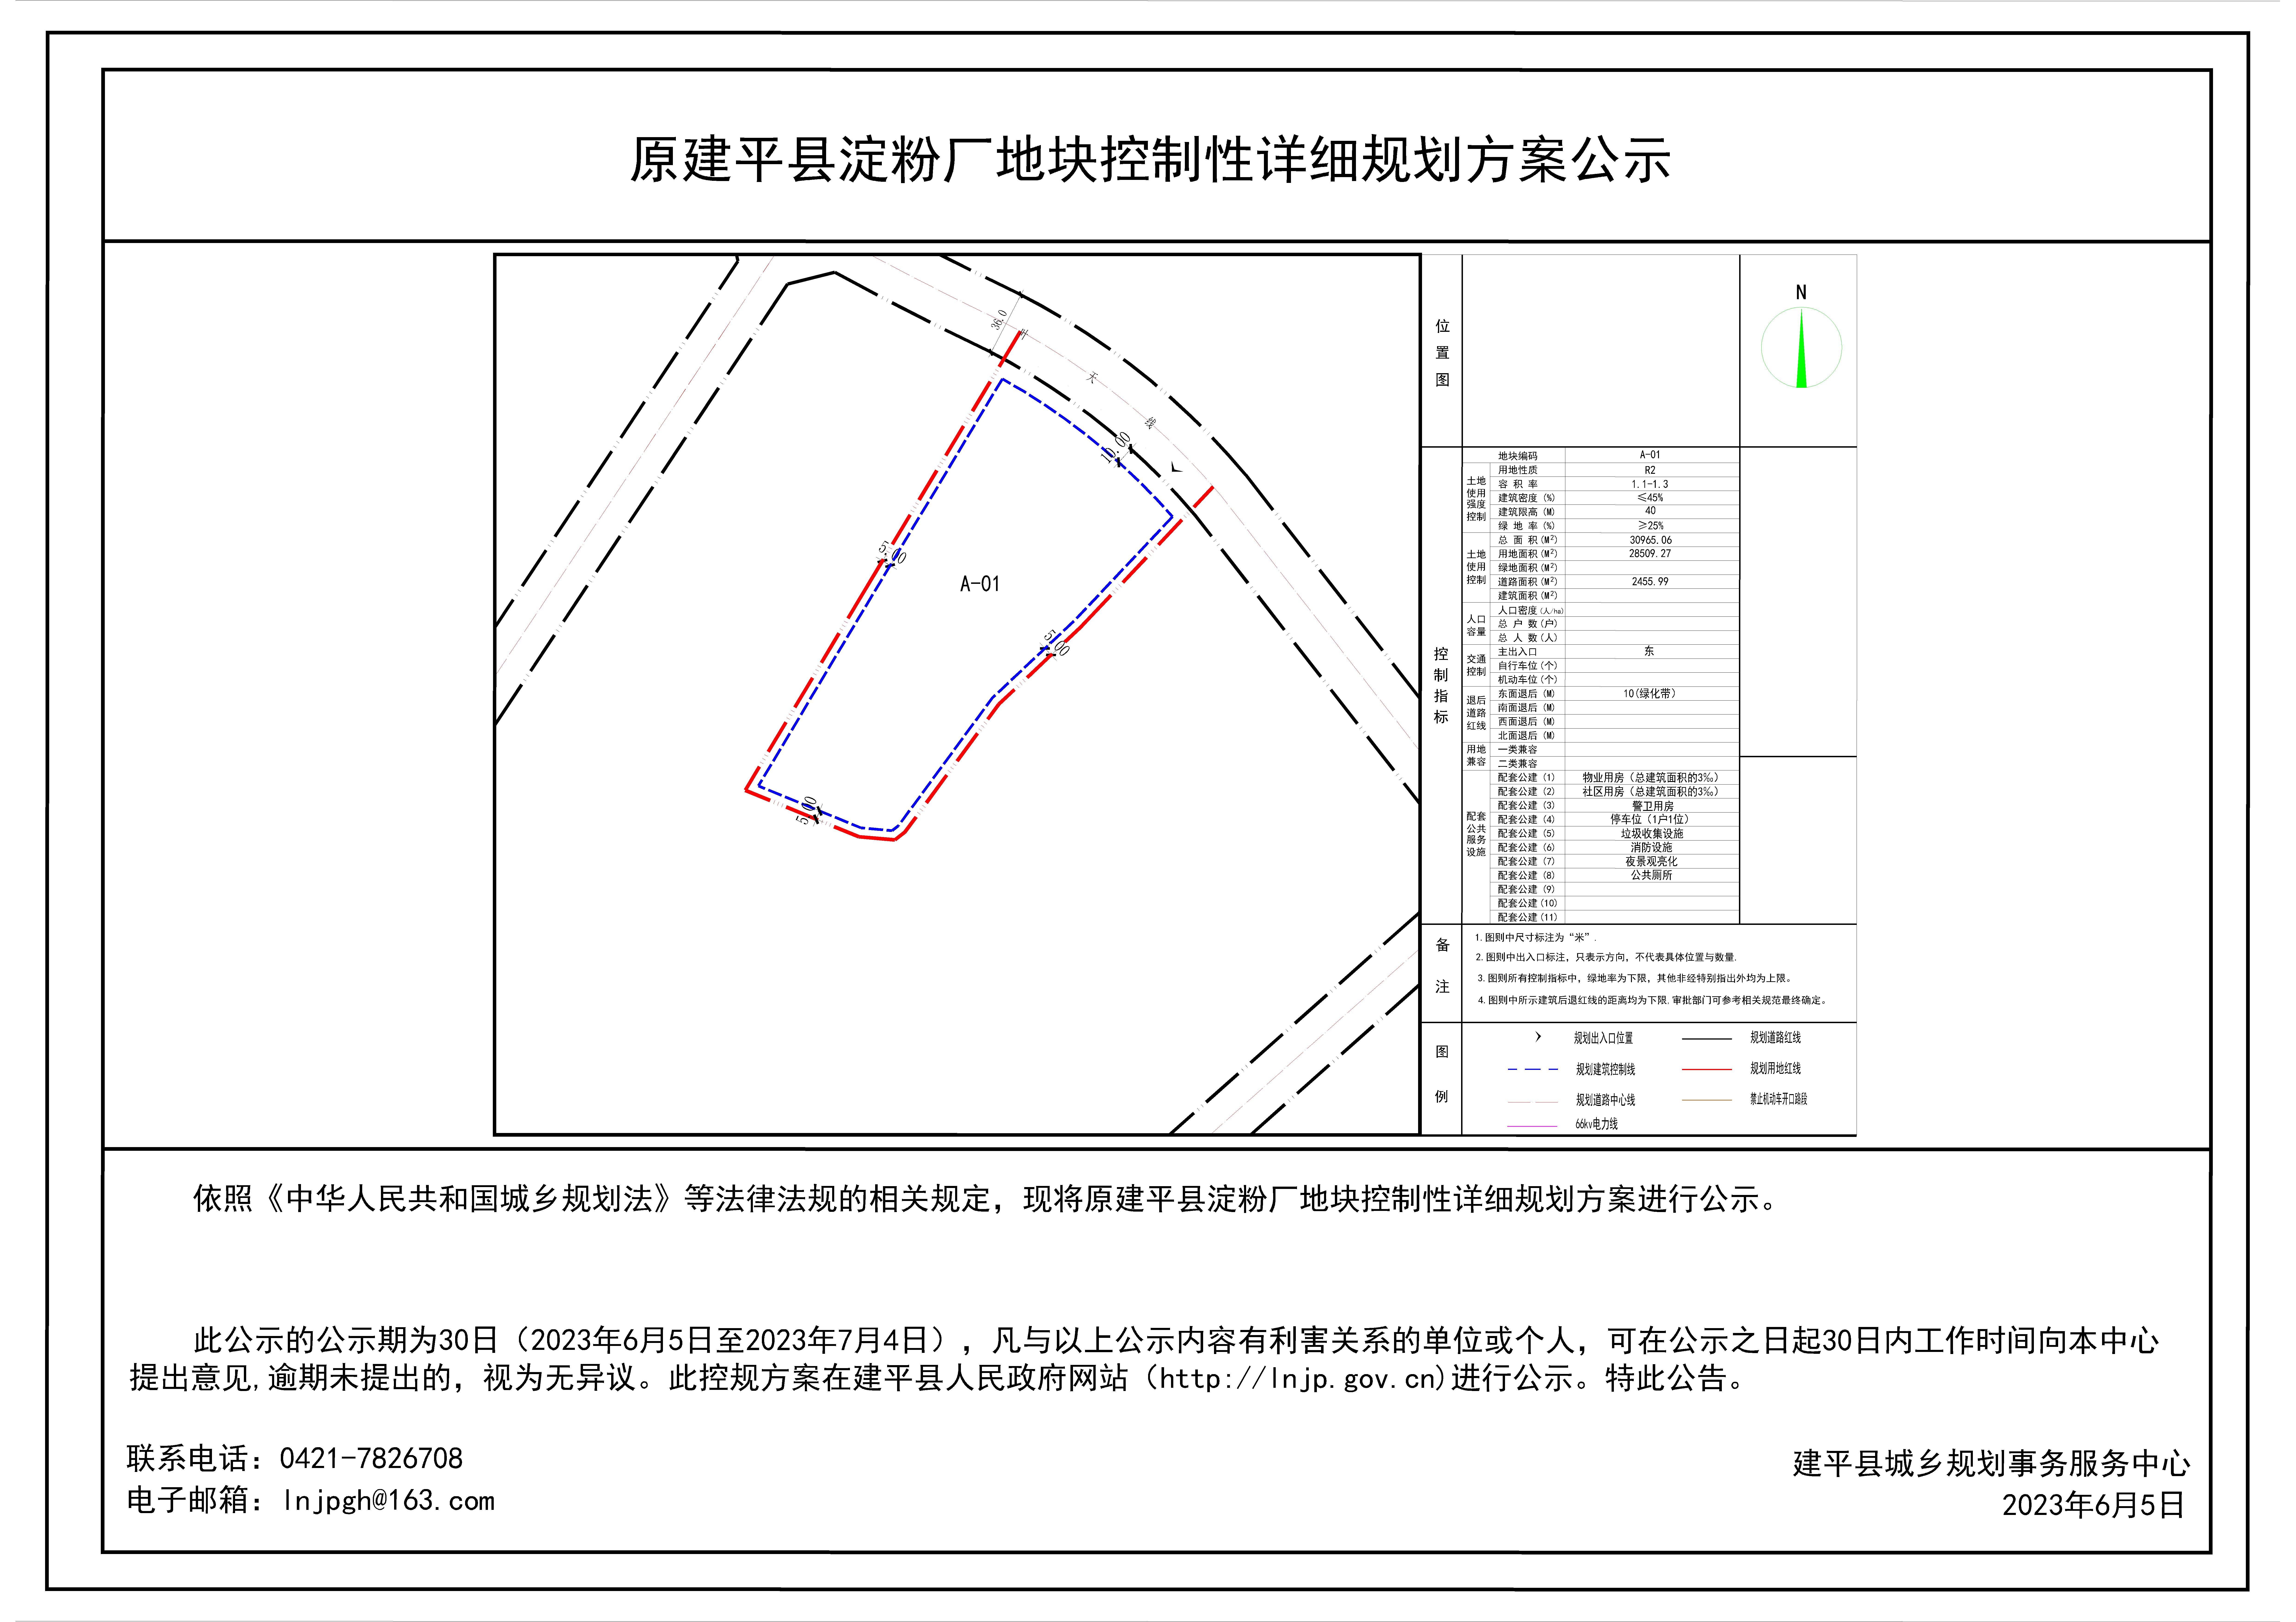 原建平县淀粉厂地块控制性详细规划方案公示-Model.jpg